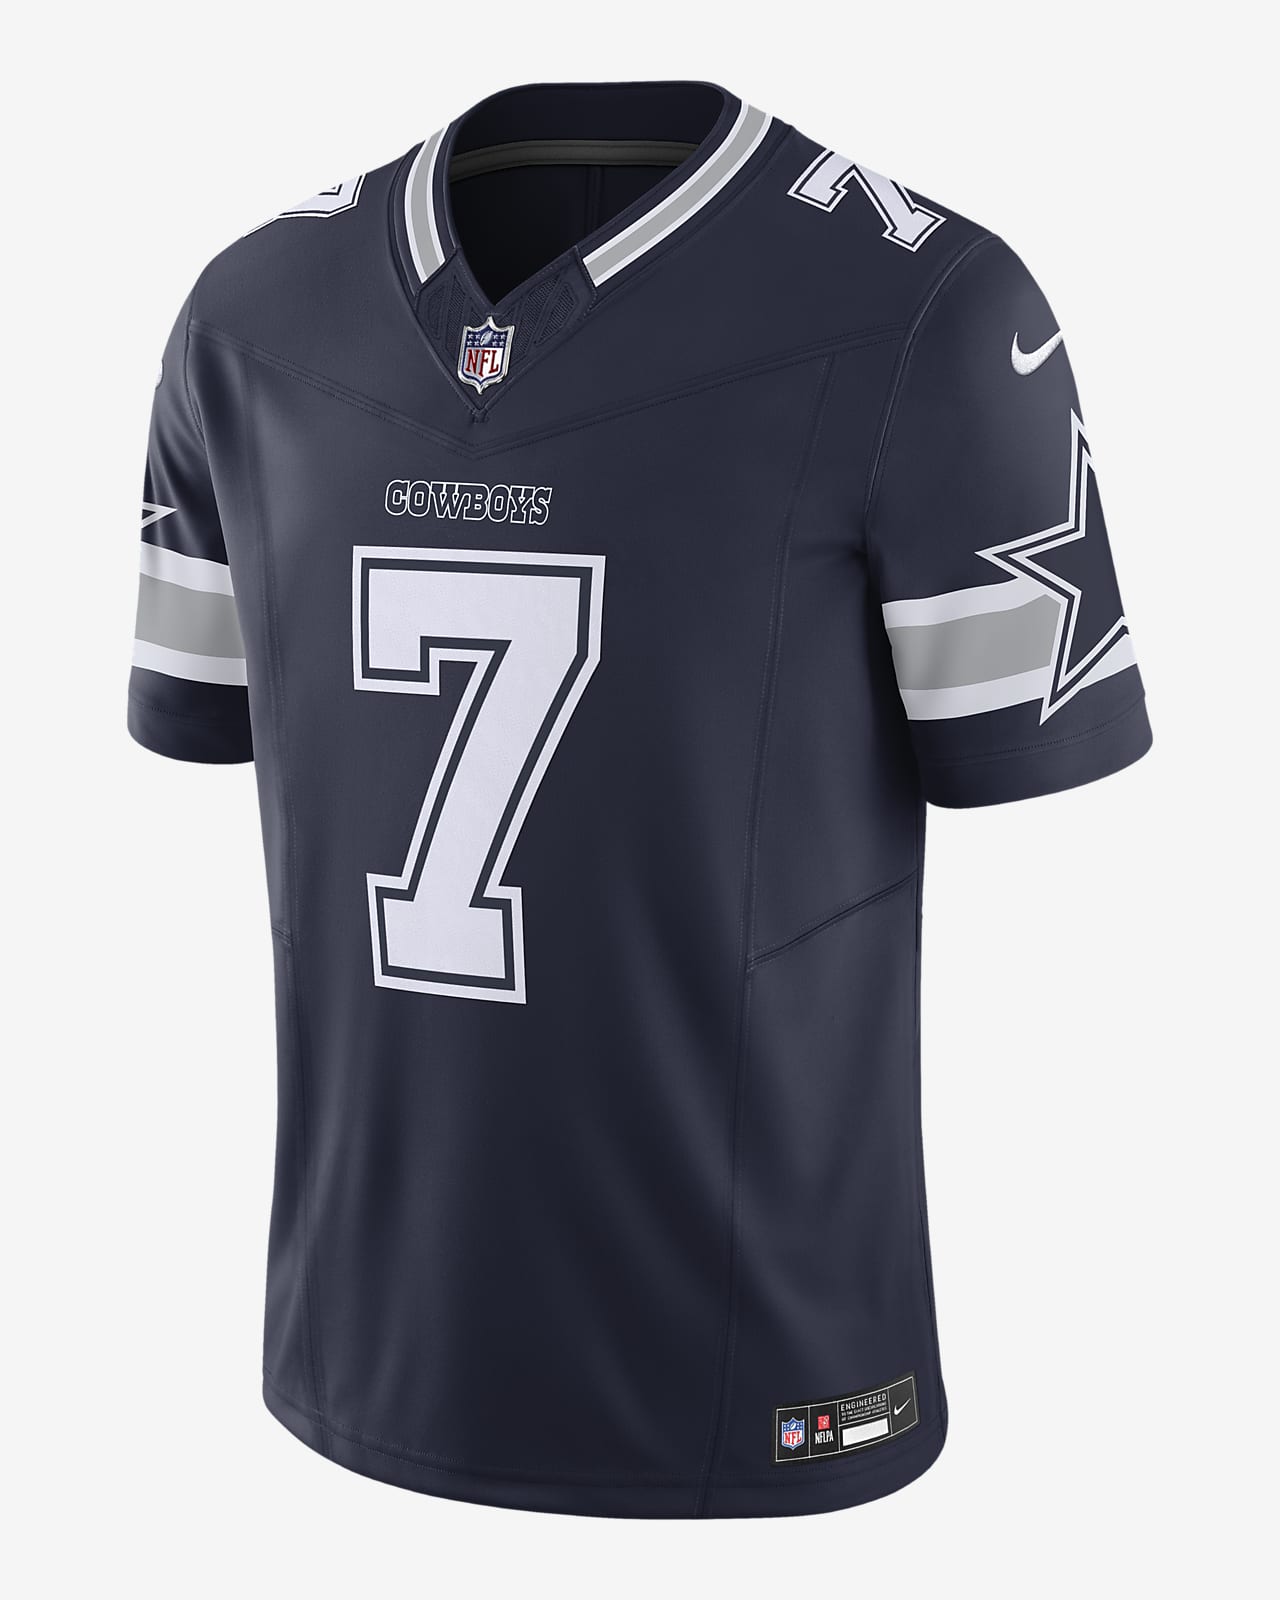 Jersey Nike Dri-FIT de la NFL Limited para hombre Trevon Diggs Dallas Cowboys